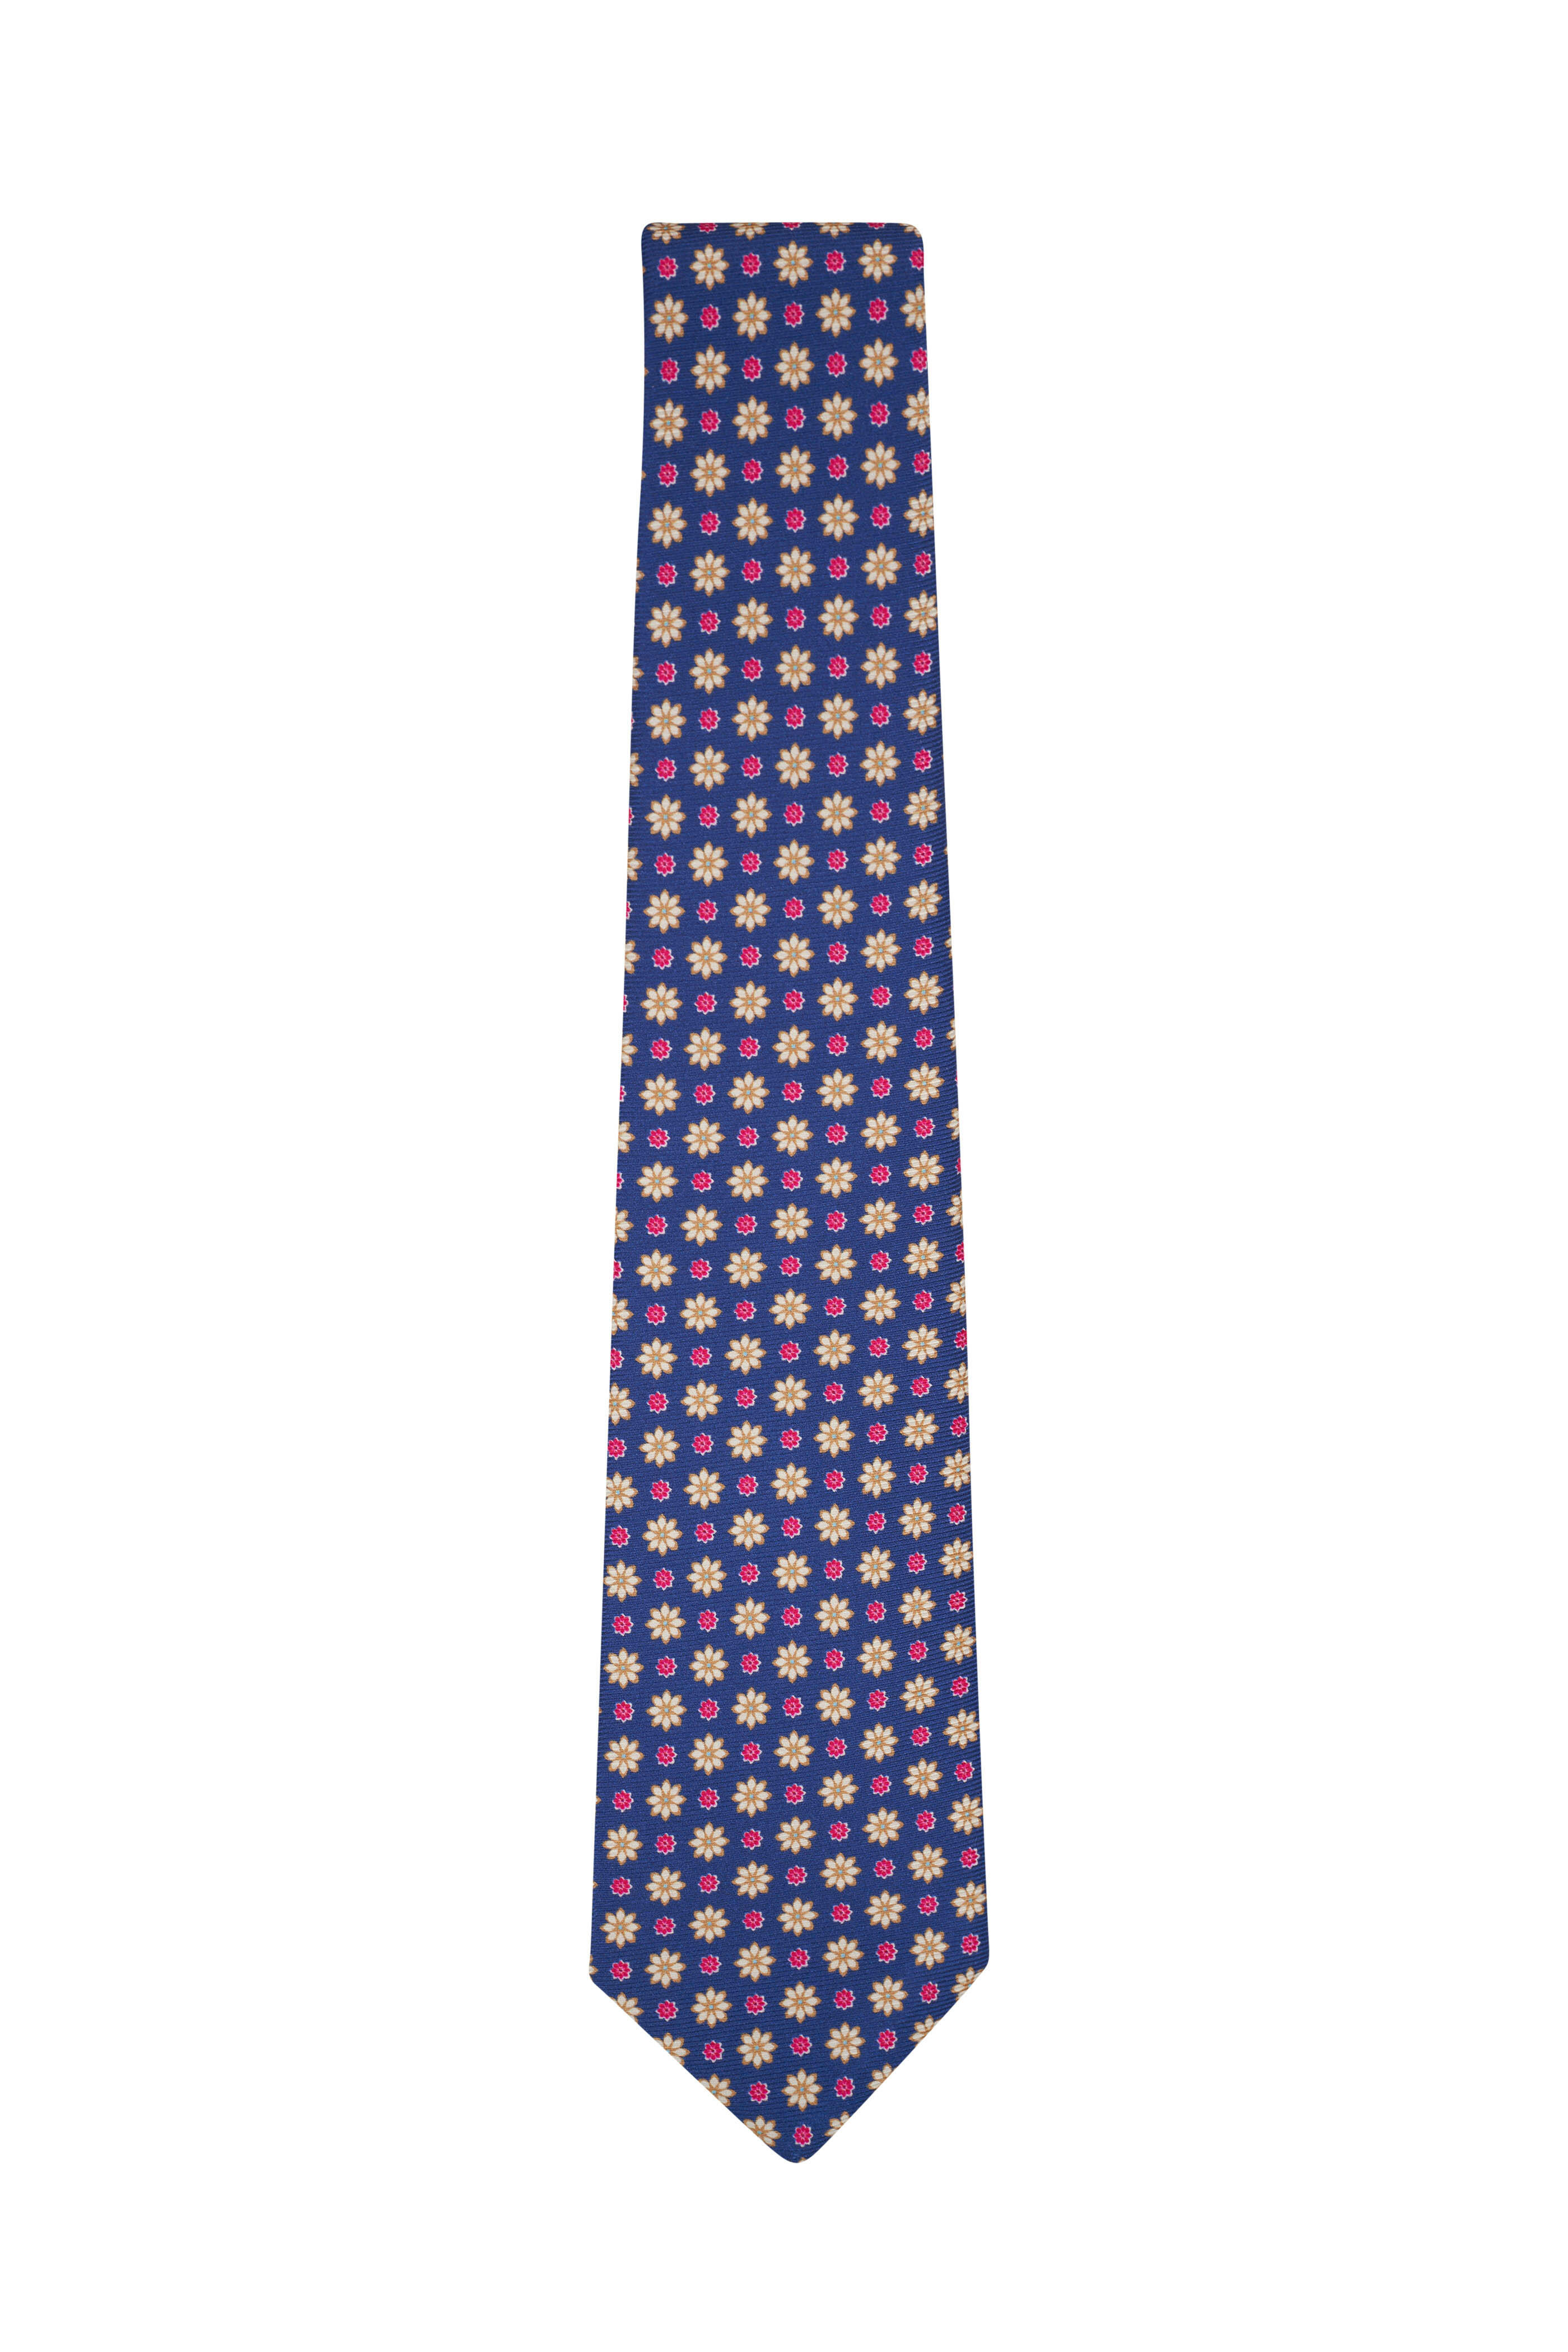 Kiton - Navy, Pink & Ivory Floral Print Silk Necktie